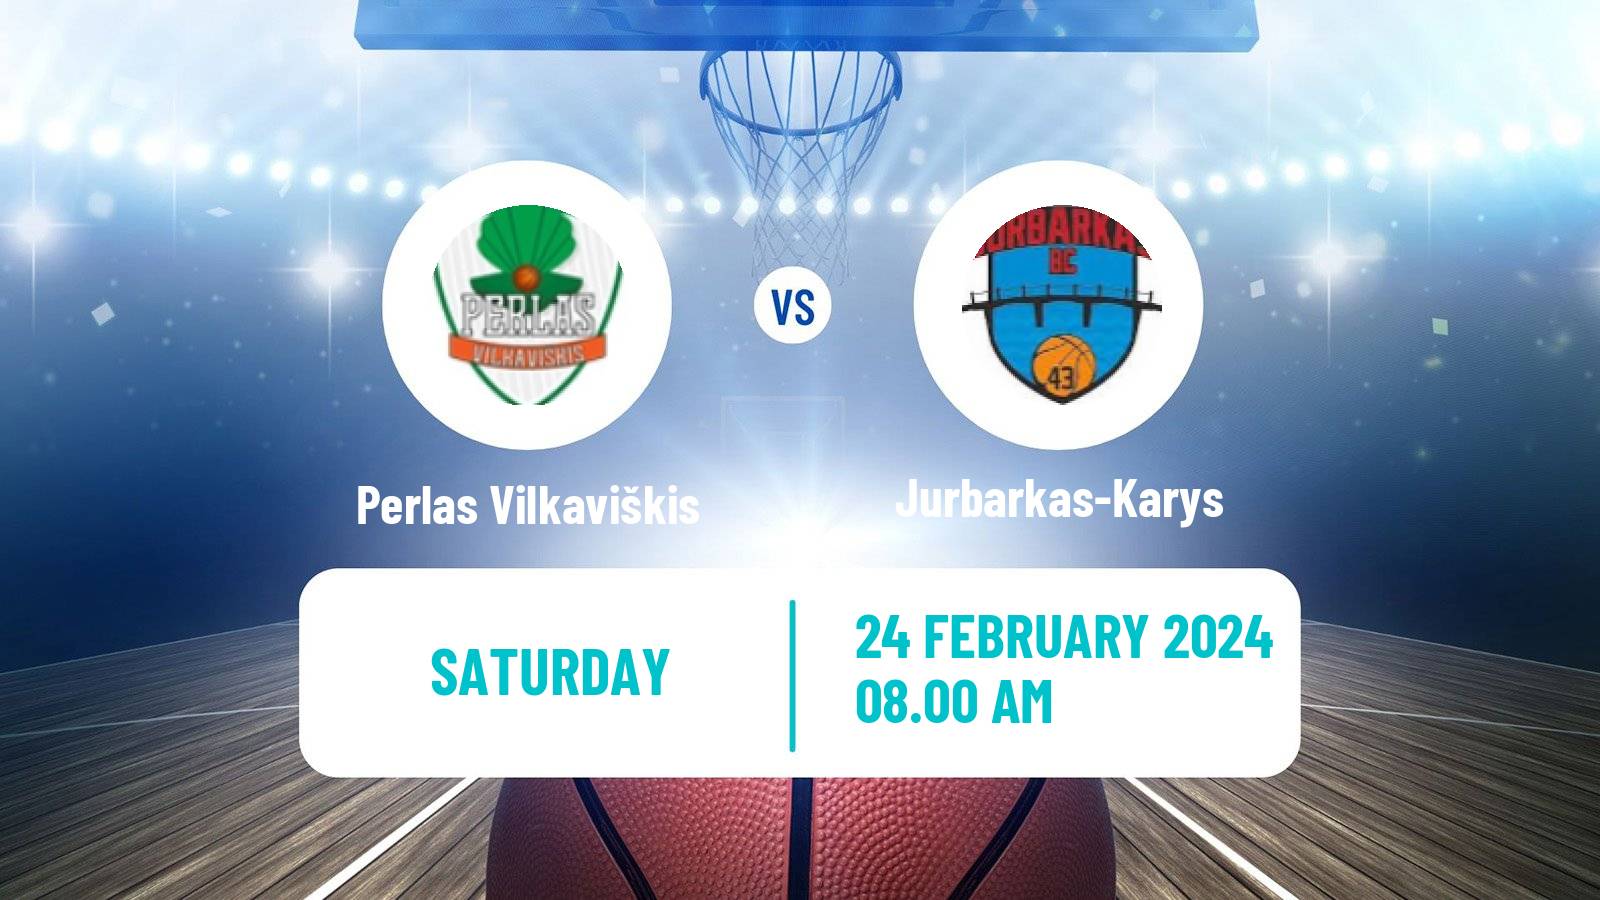 Basketball Lietuvos NKL Perlas Vilkaviškis - Jurbarkas-Karys